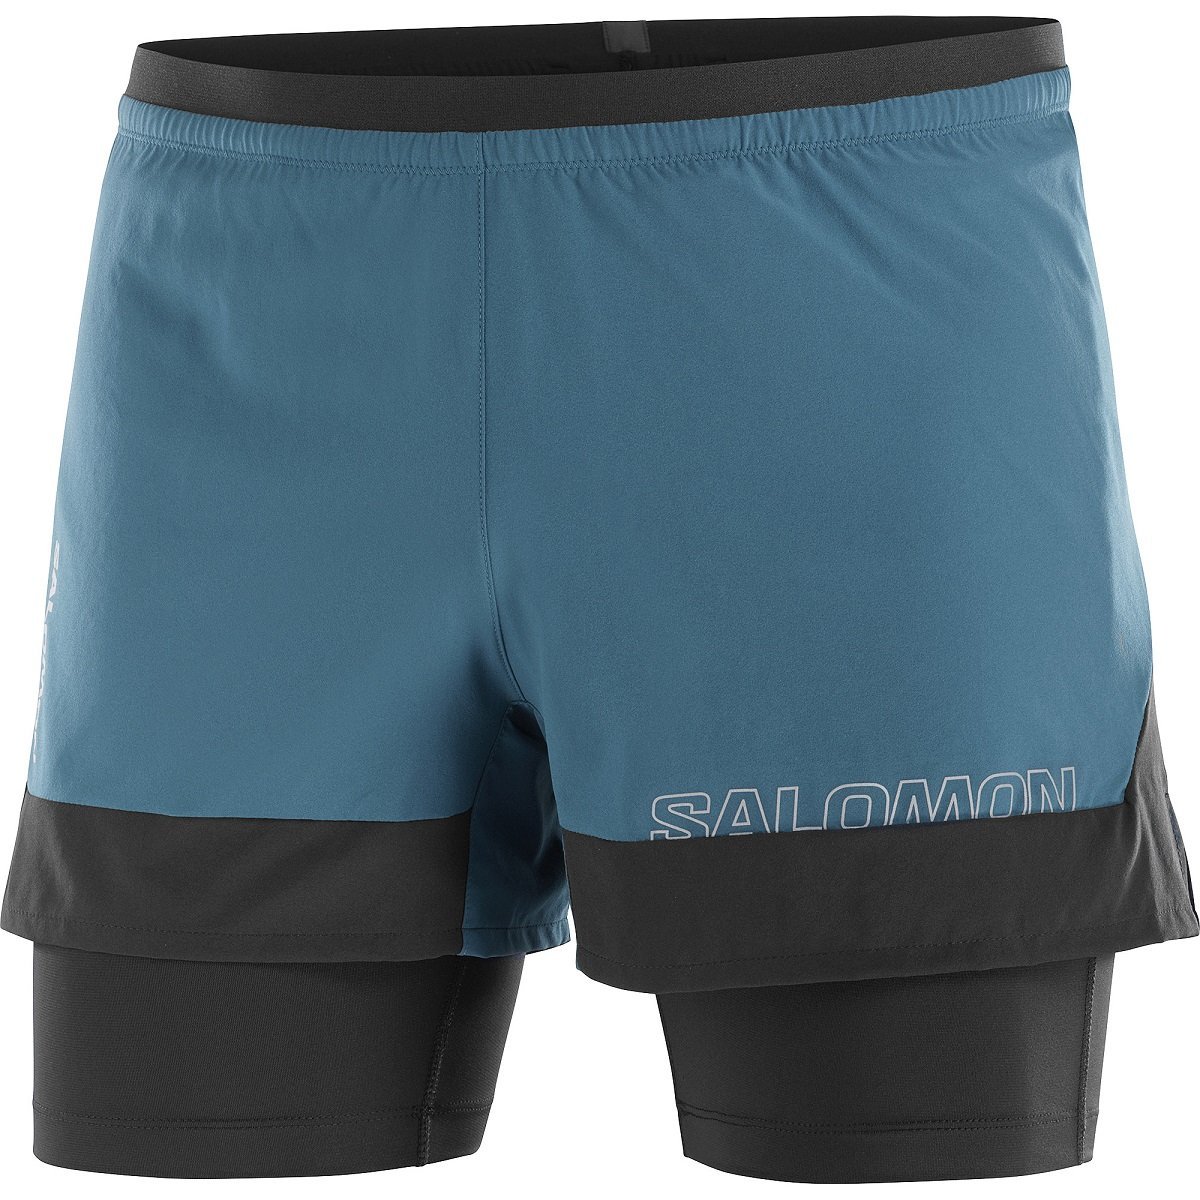 Šortky Salomon Cross 2IN1 Shorts M - modrá/čierna